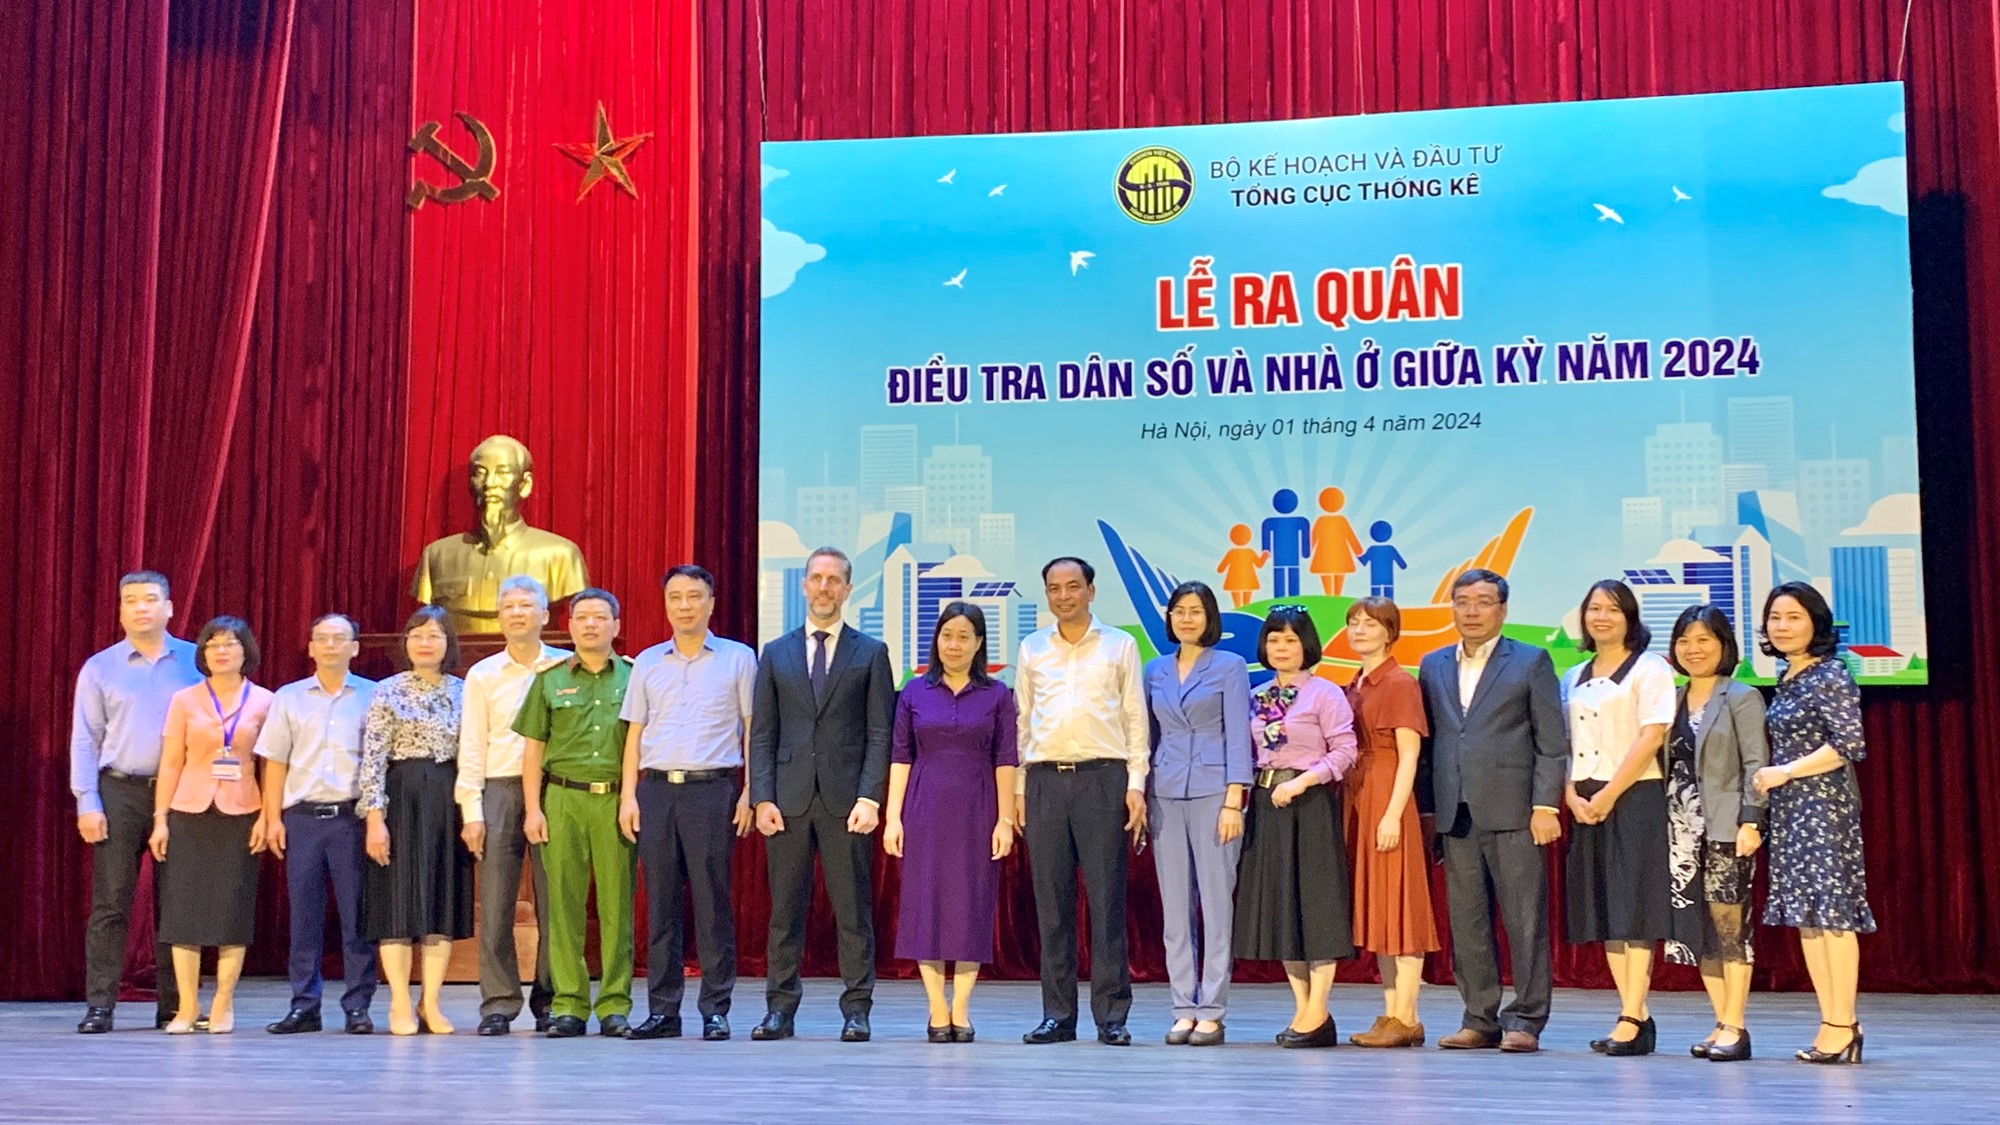 Điều tra dân số và nhà ở năm 2024: Lần đầu thu thập thông tin người nước ngoài ở Việt Nam  - ảnh 3